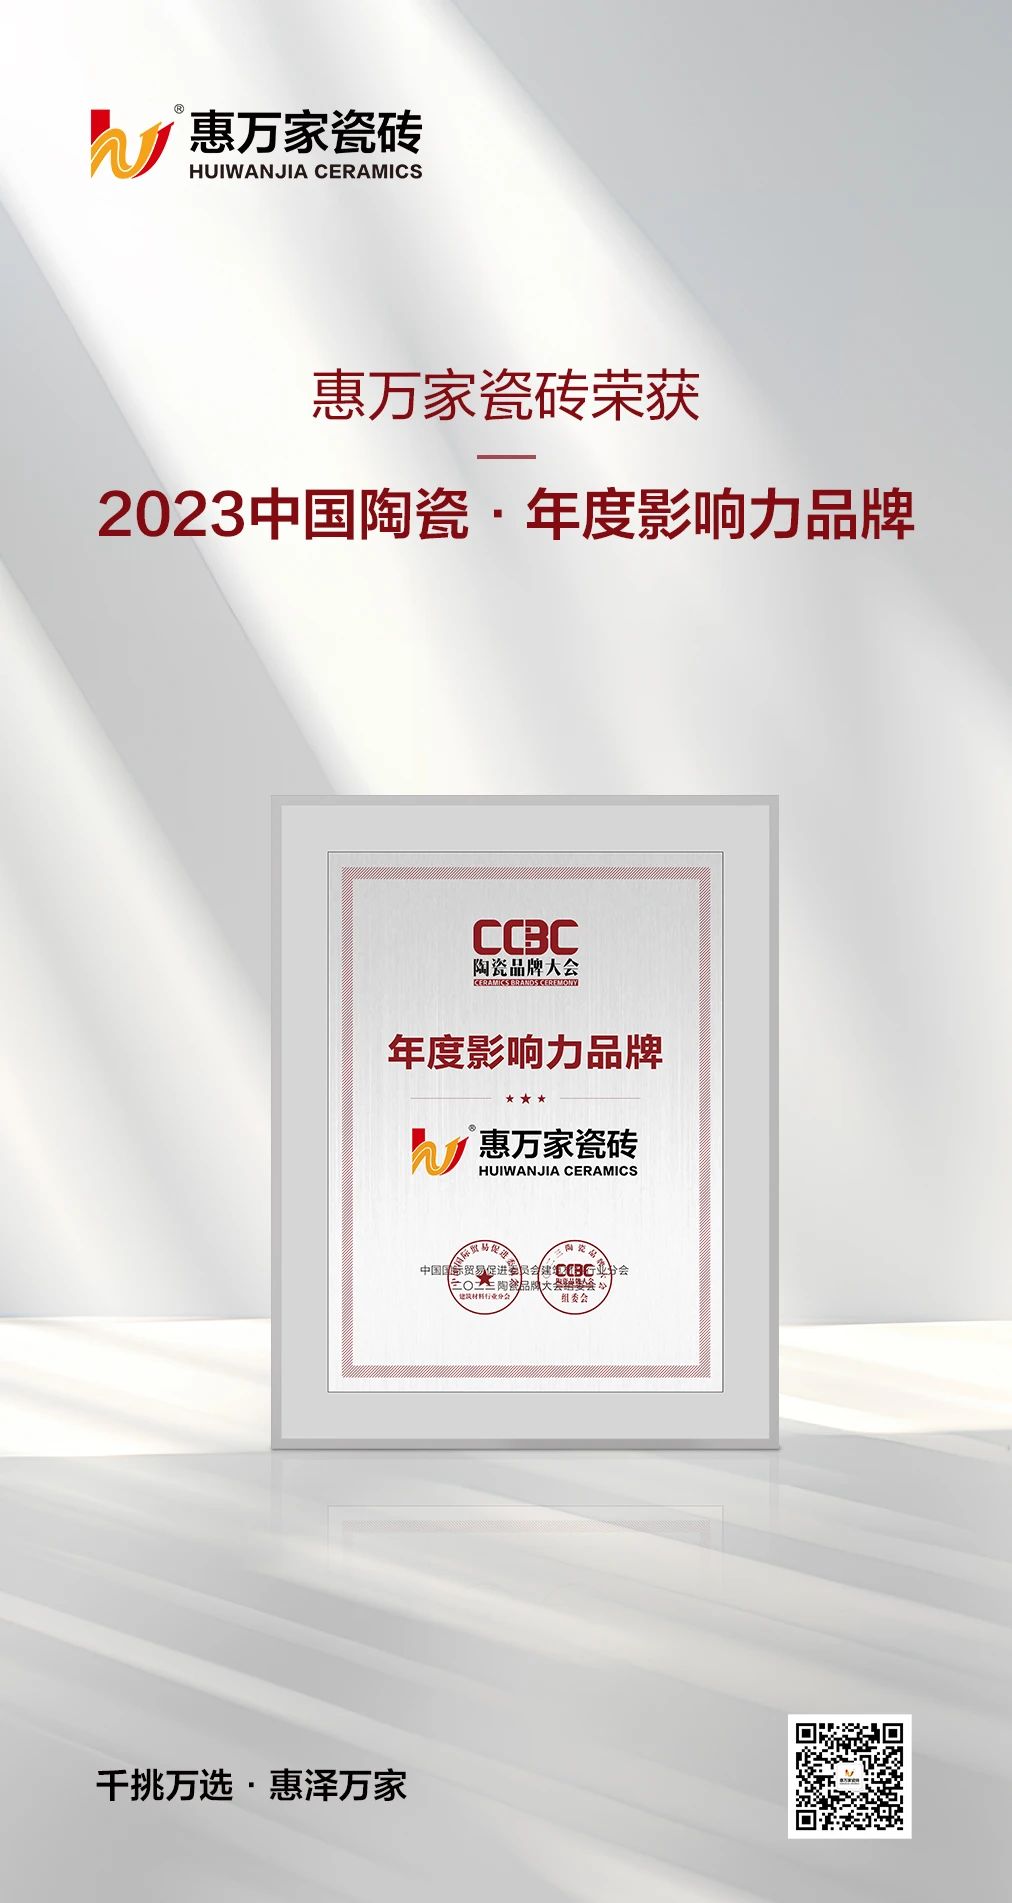 惠万家瓷砖荣获2023中国陶瓷“年度影响力品牌”